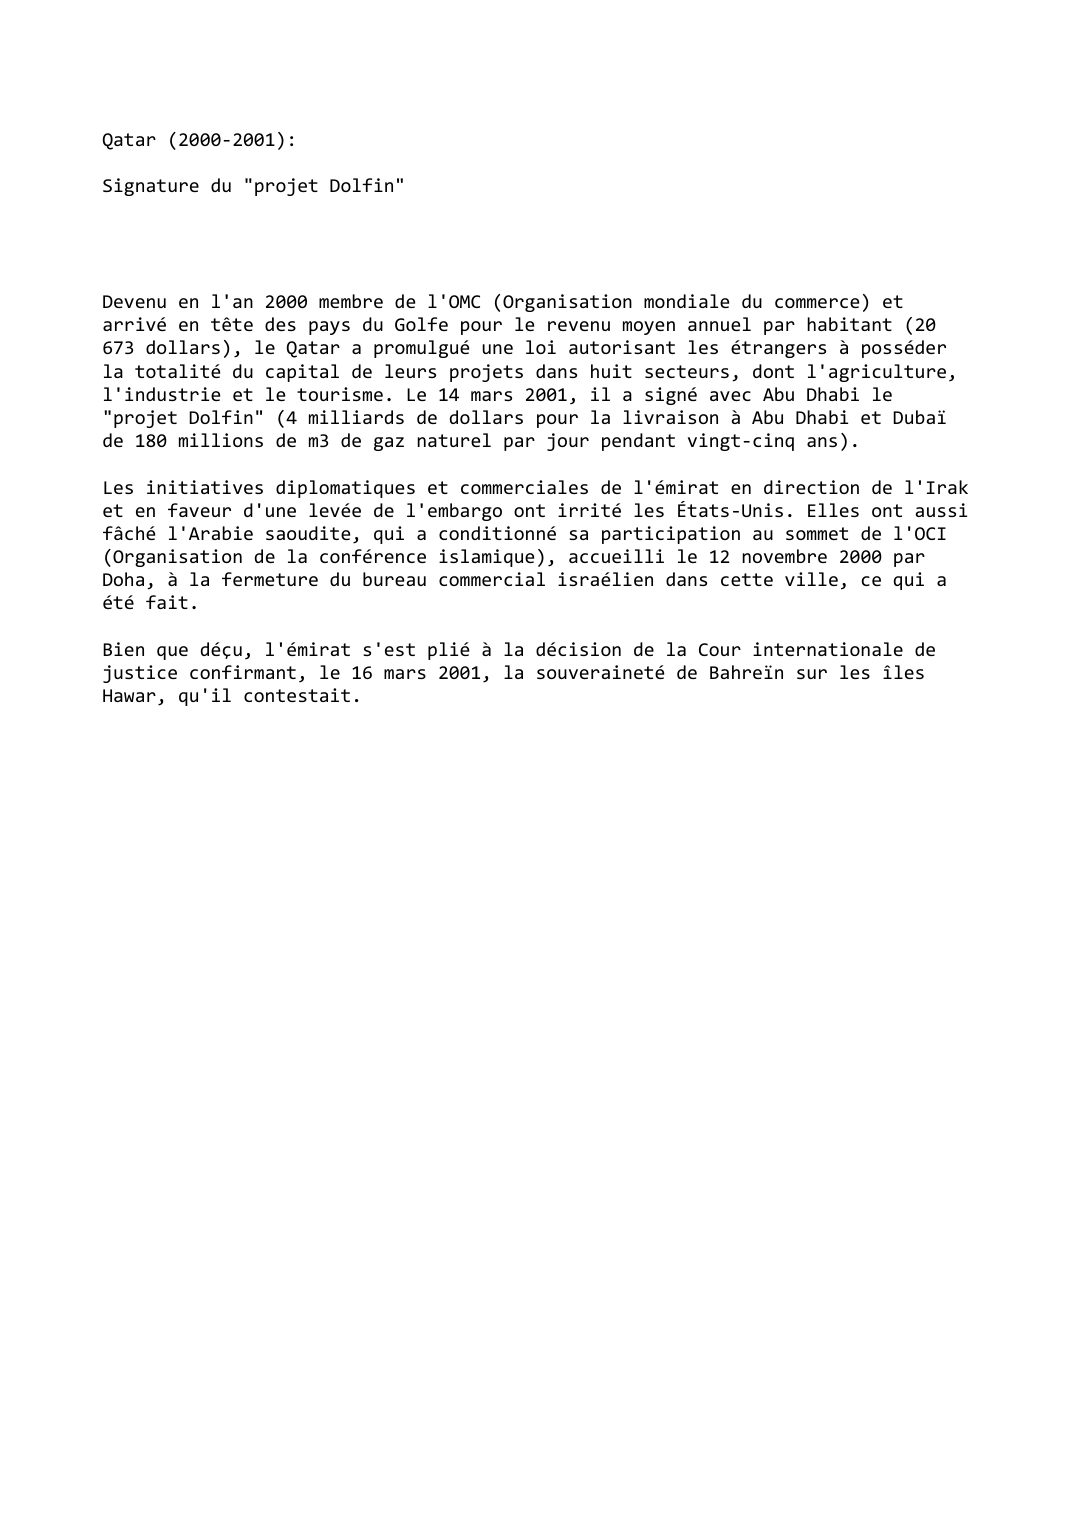 Prévisualisation du document Qatar (2000-2001):

Signature du "projet Dolfin"